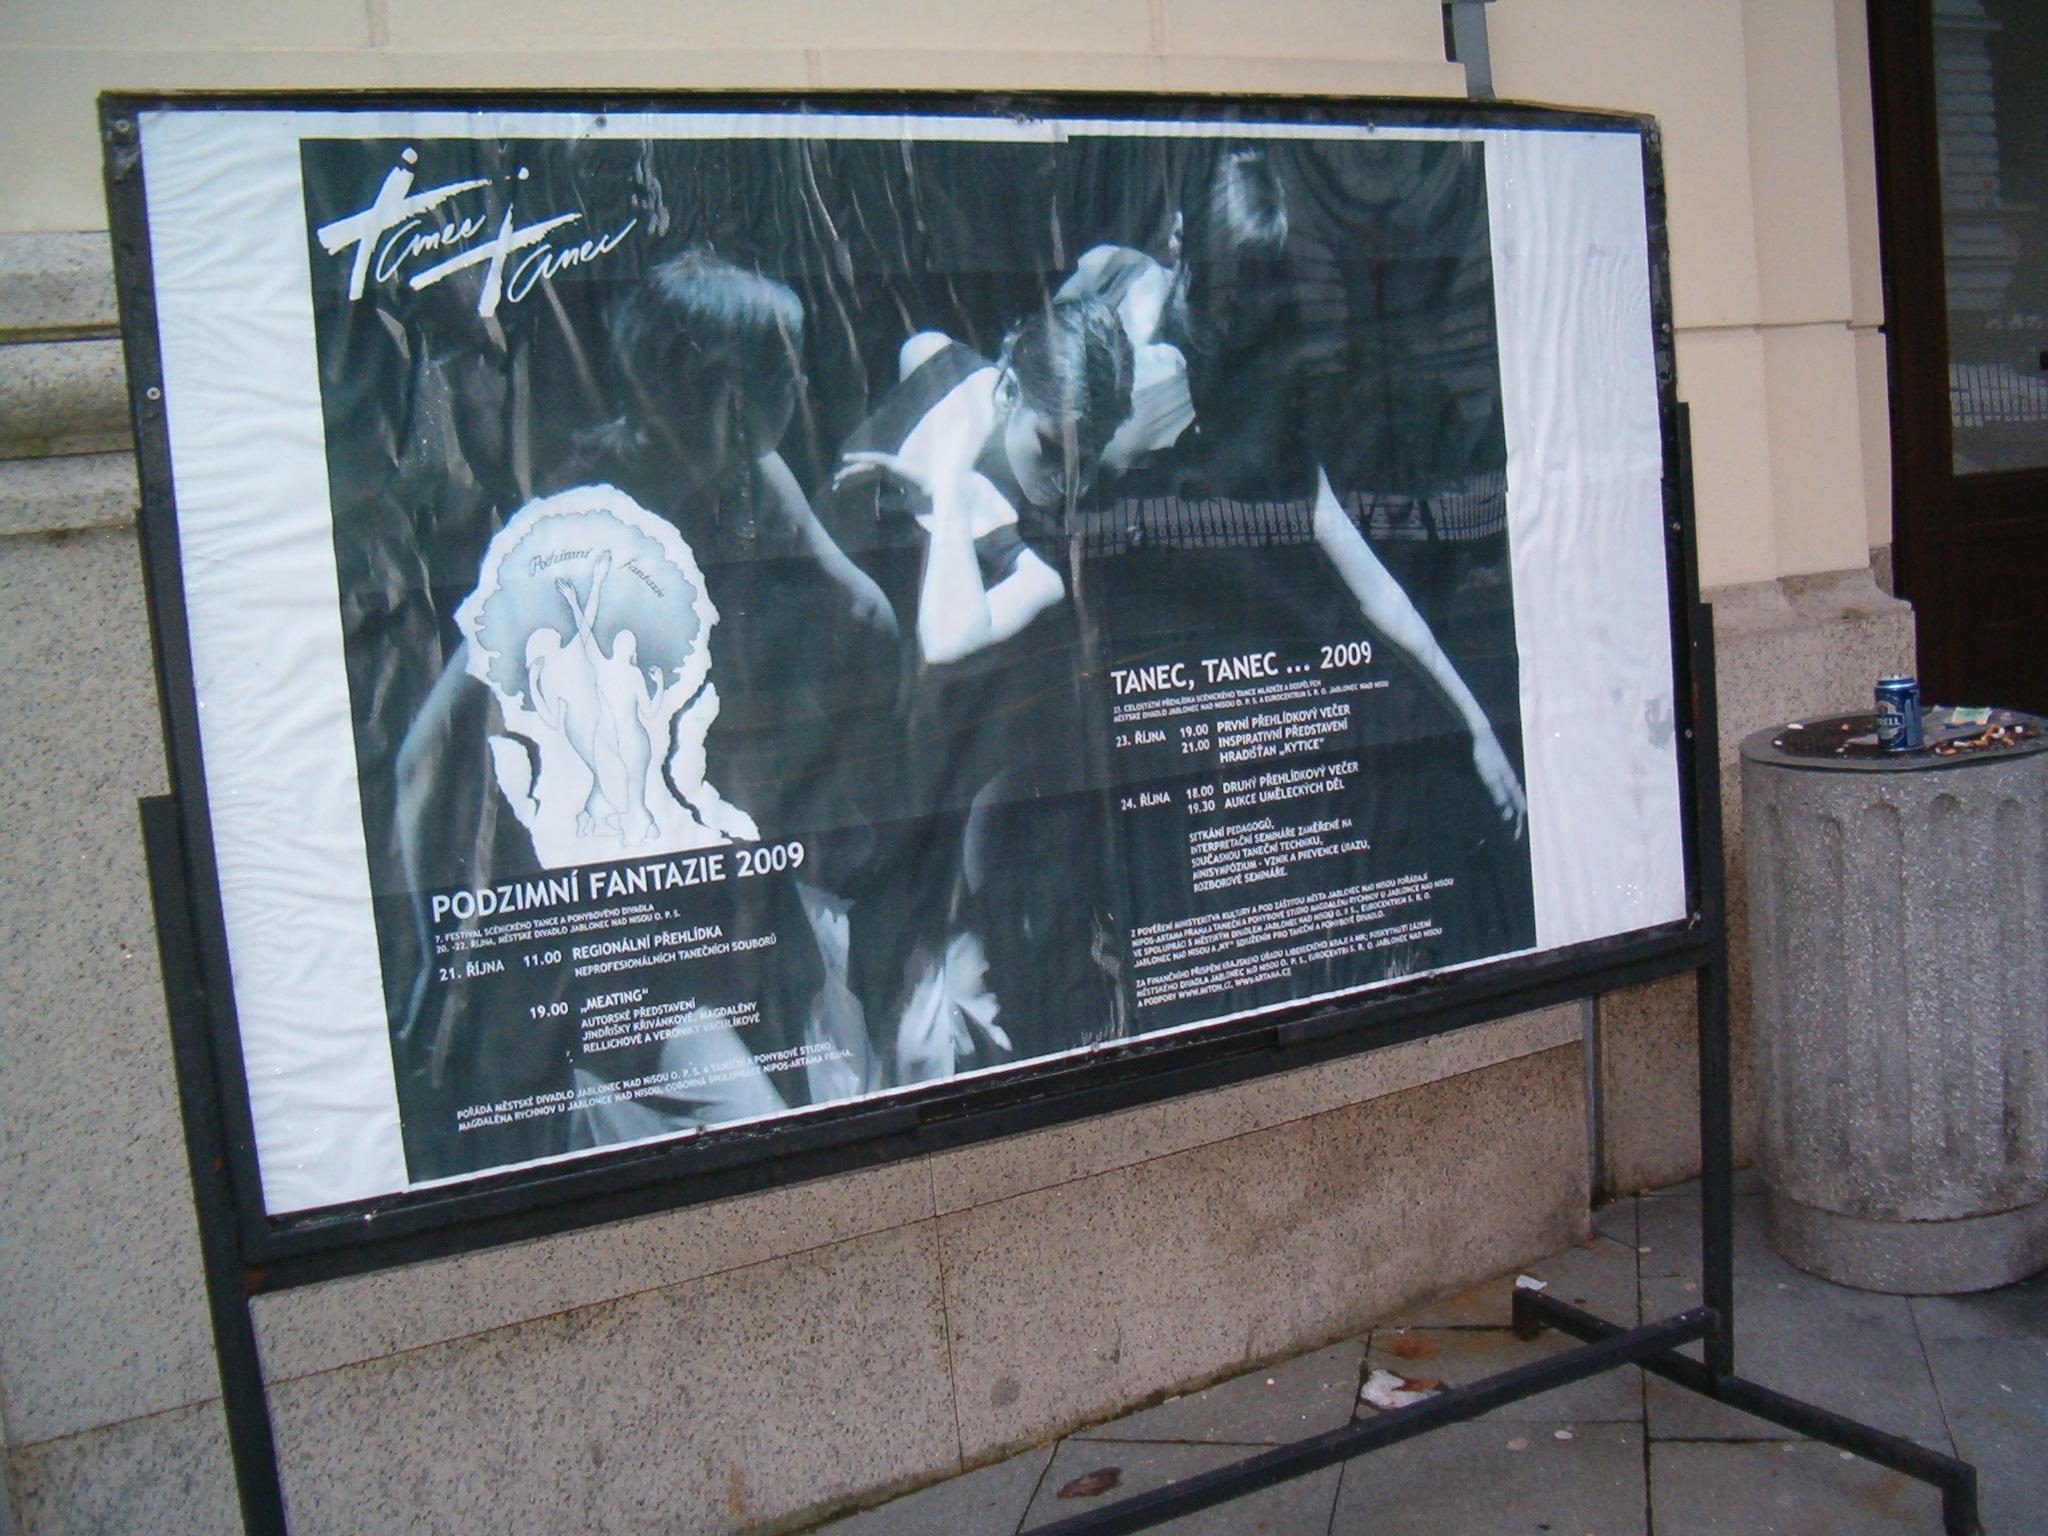 Okolo na plakátě před divadlem